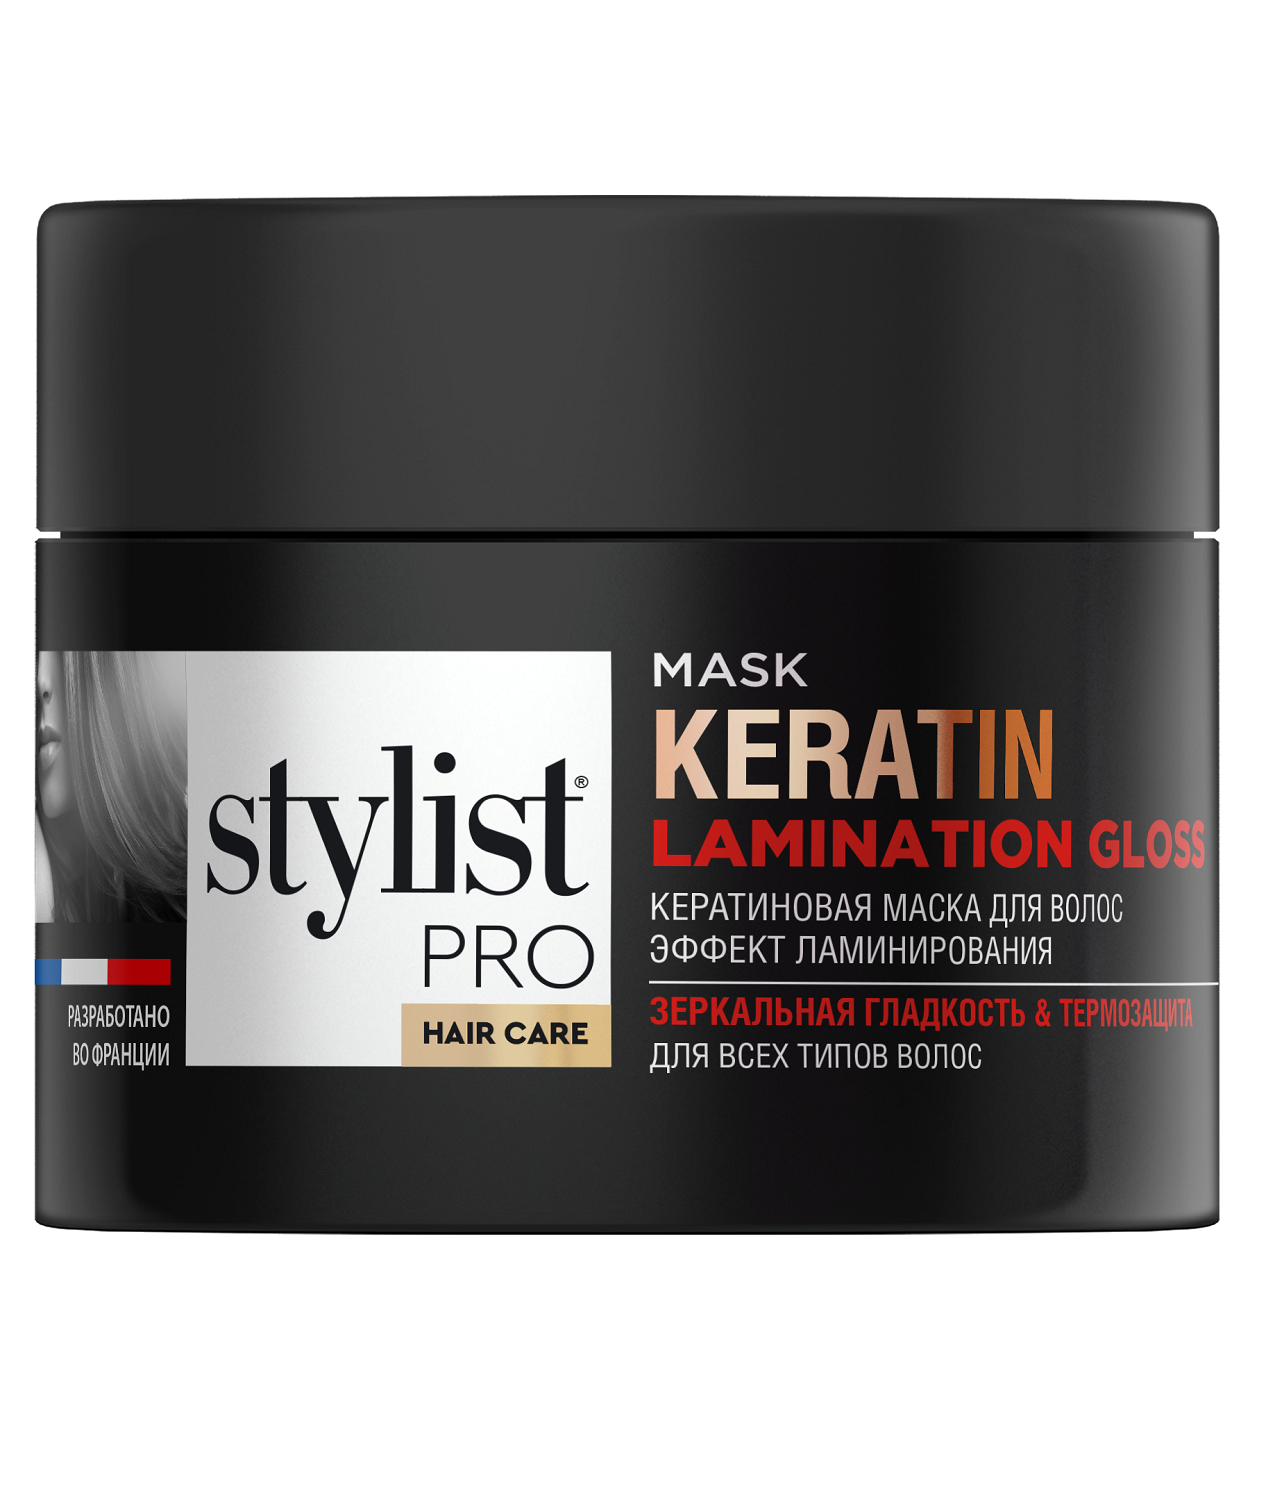 Маска для волос STYLIST PRO hair care Кератиновая эффект ламинирования 220мл - в интернет-магазине tut-beauty.by